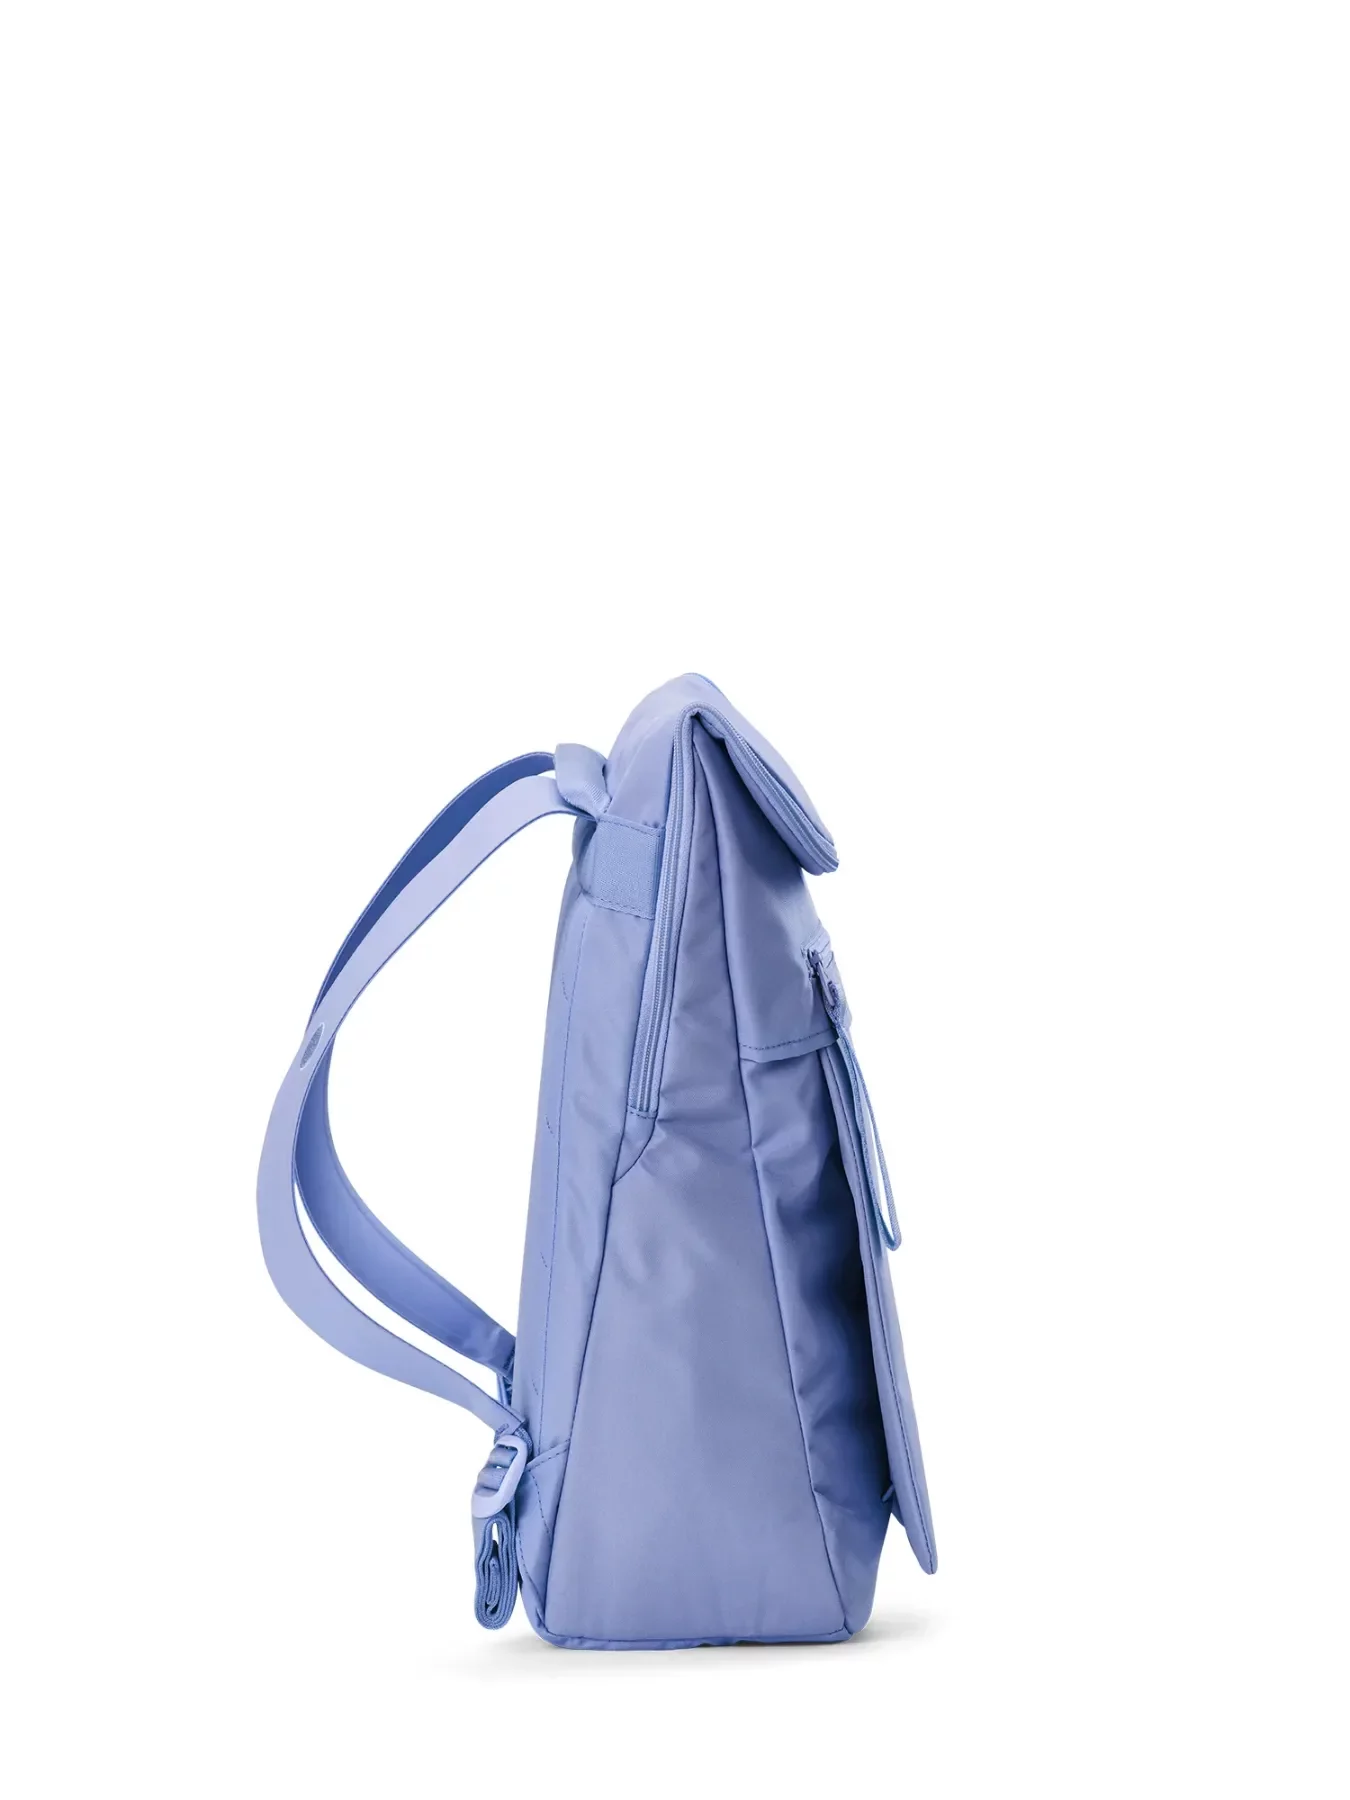 pinqponq Backpack KLAK - Pool Blue 5